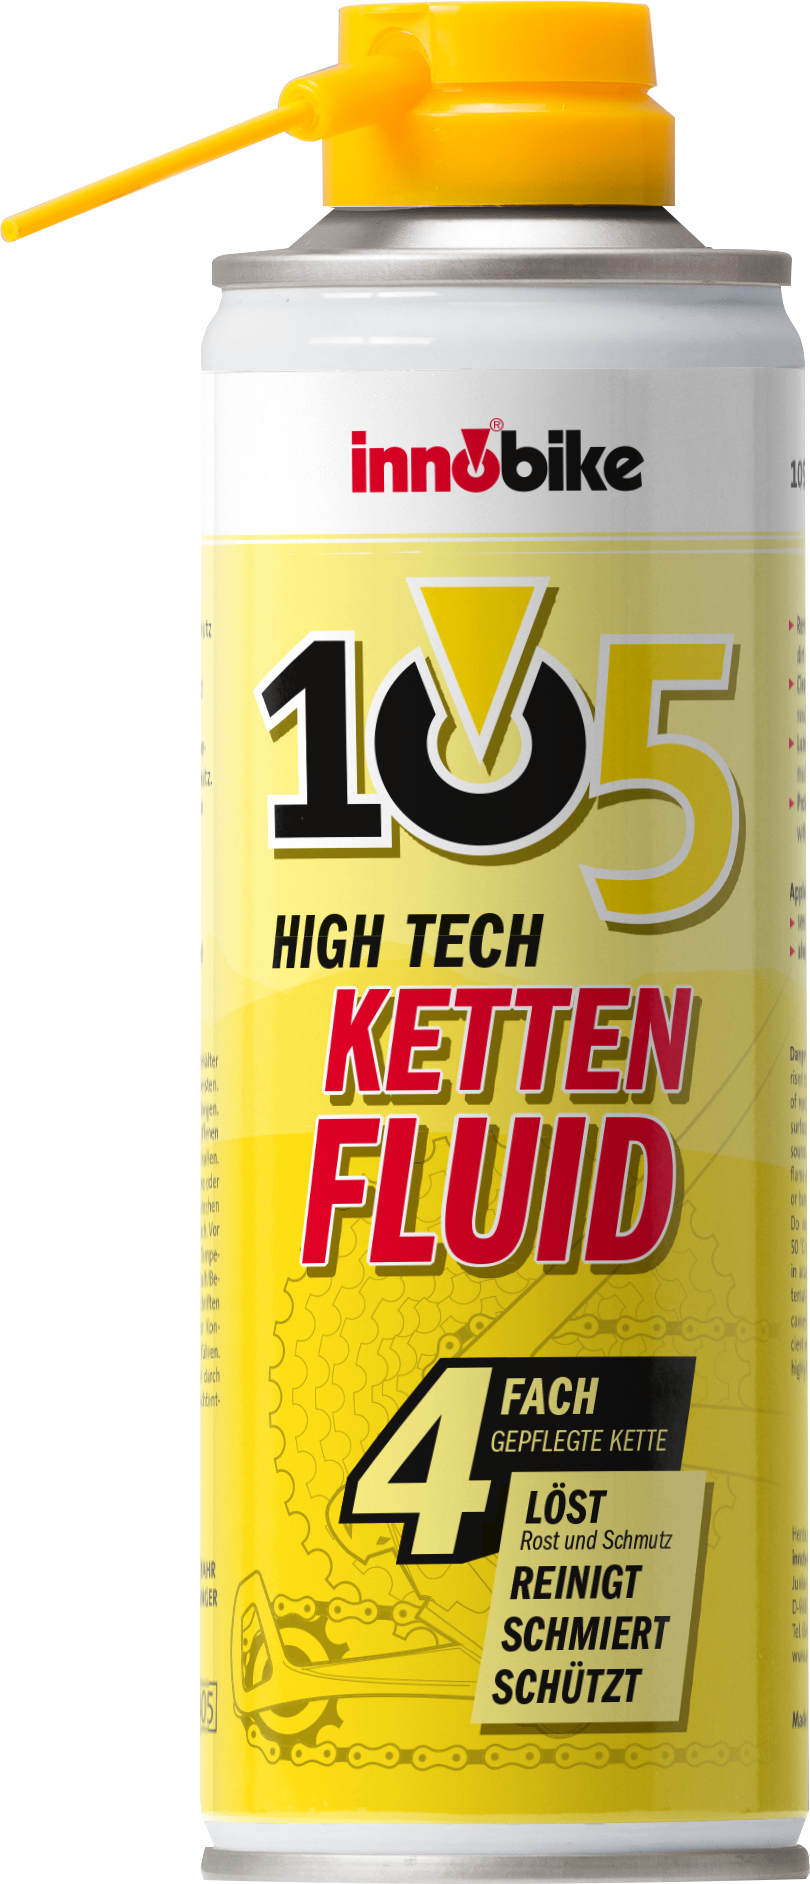 Ketten Fluid High Tech 105 Innobike